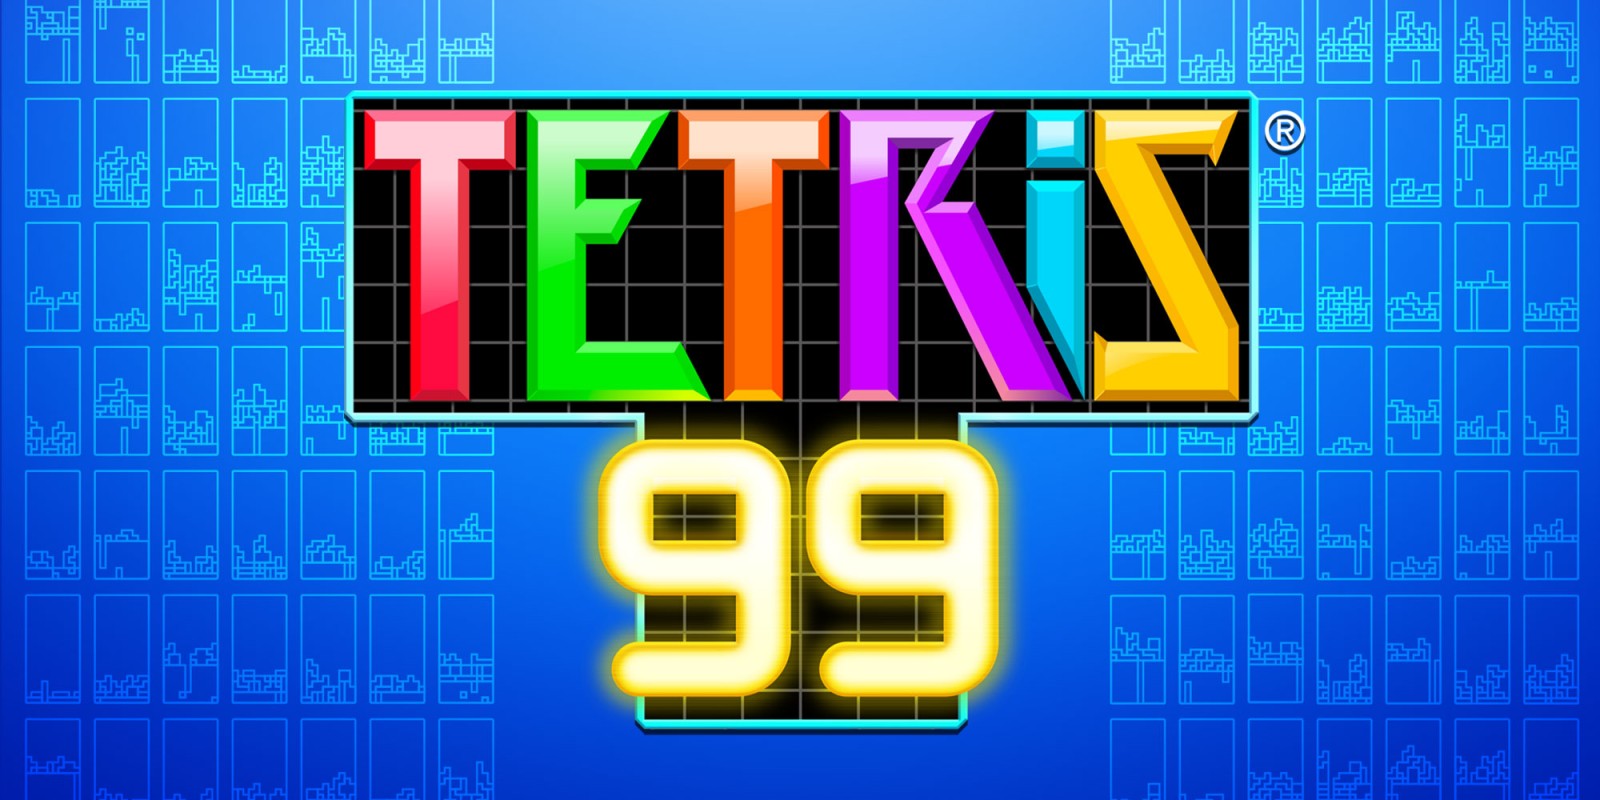 Картинки по запросу tetris 99 switch